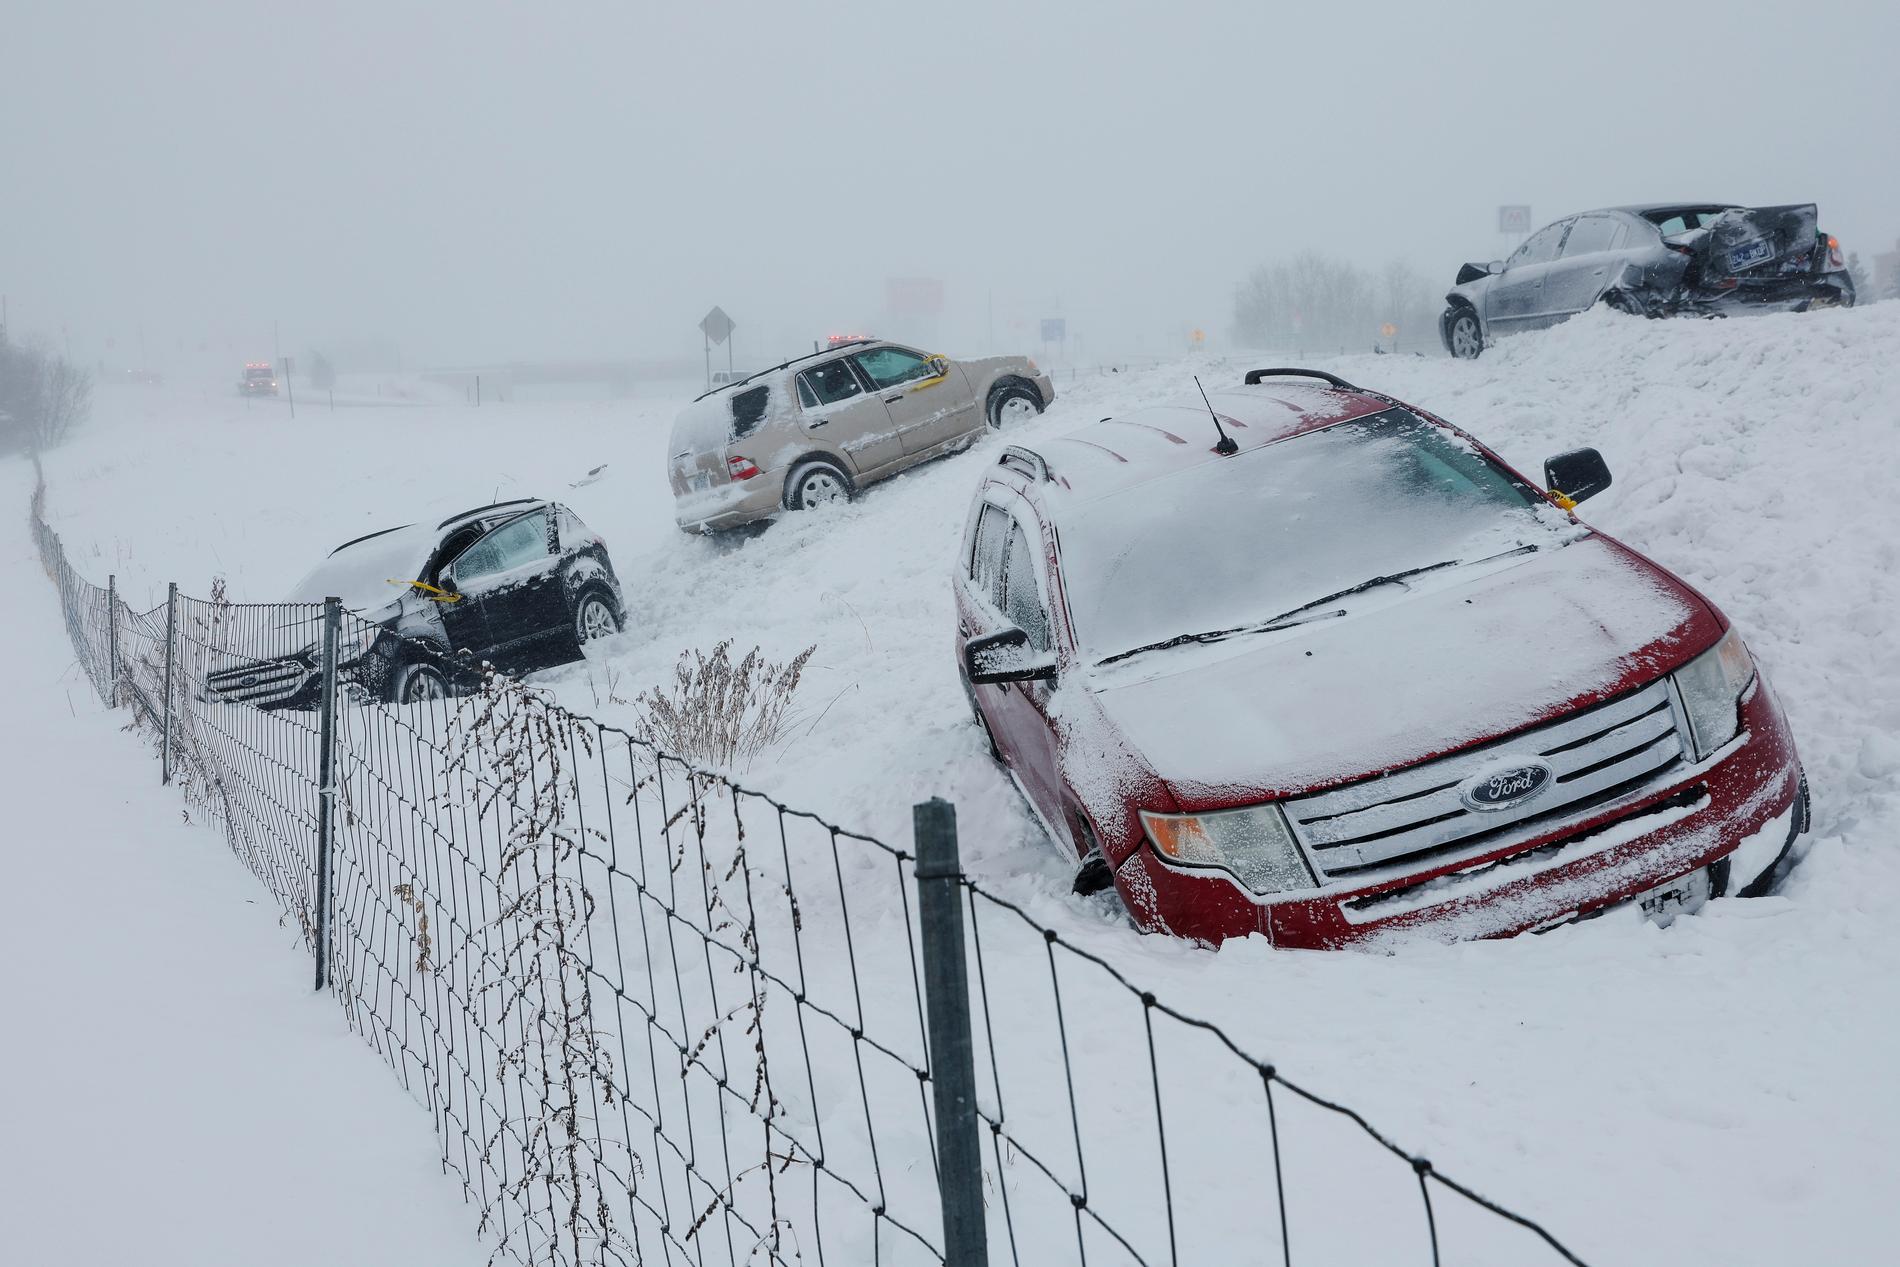 Molti sono morti durante una tempesta invernale in Nord America: – Per favore, restate a casa